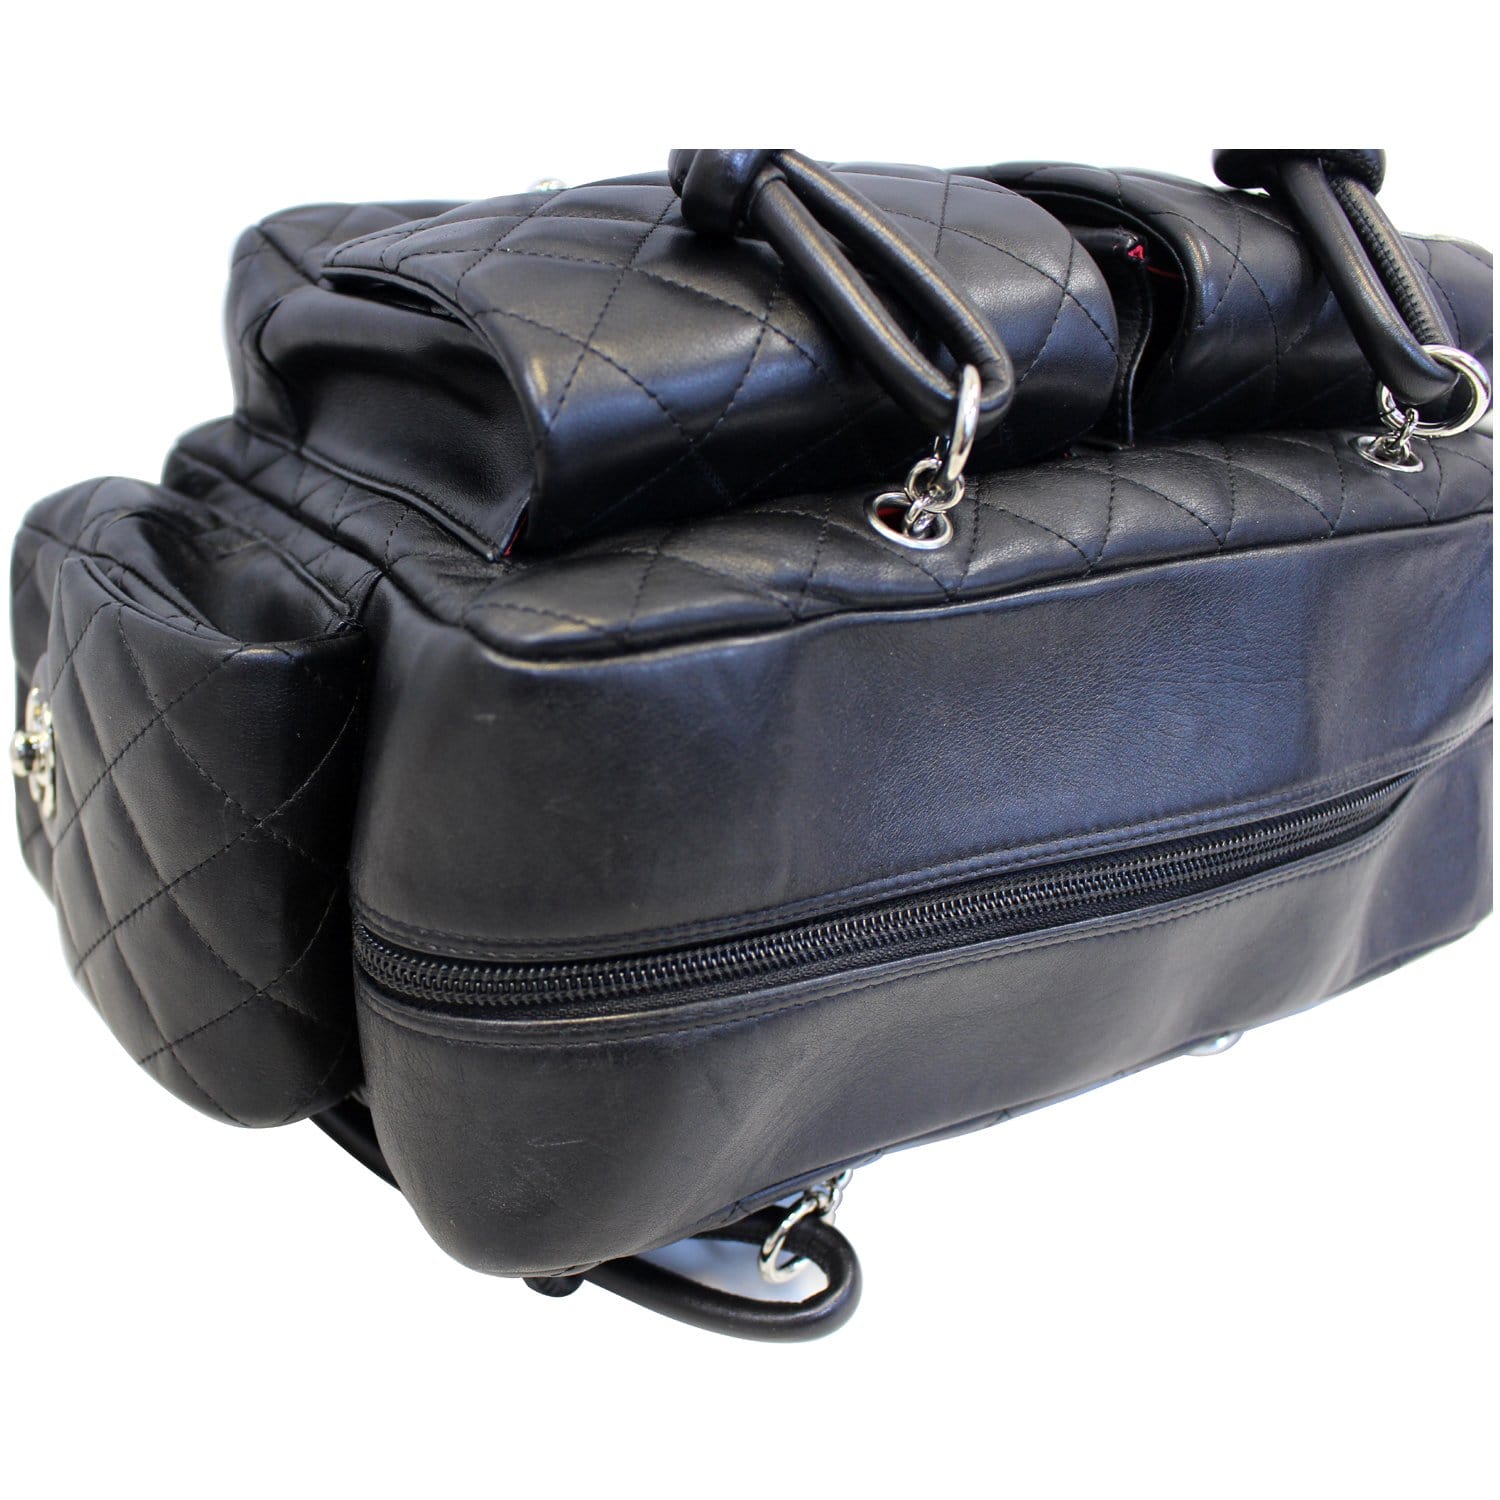 Chanel Multi Pocket Backpack